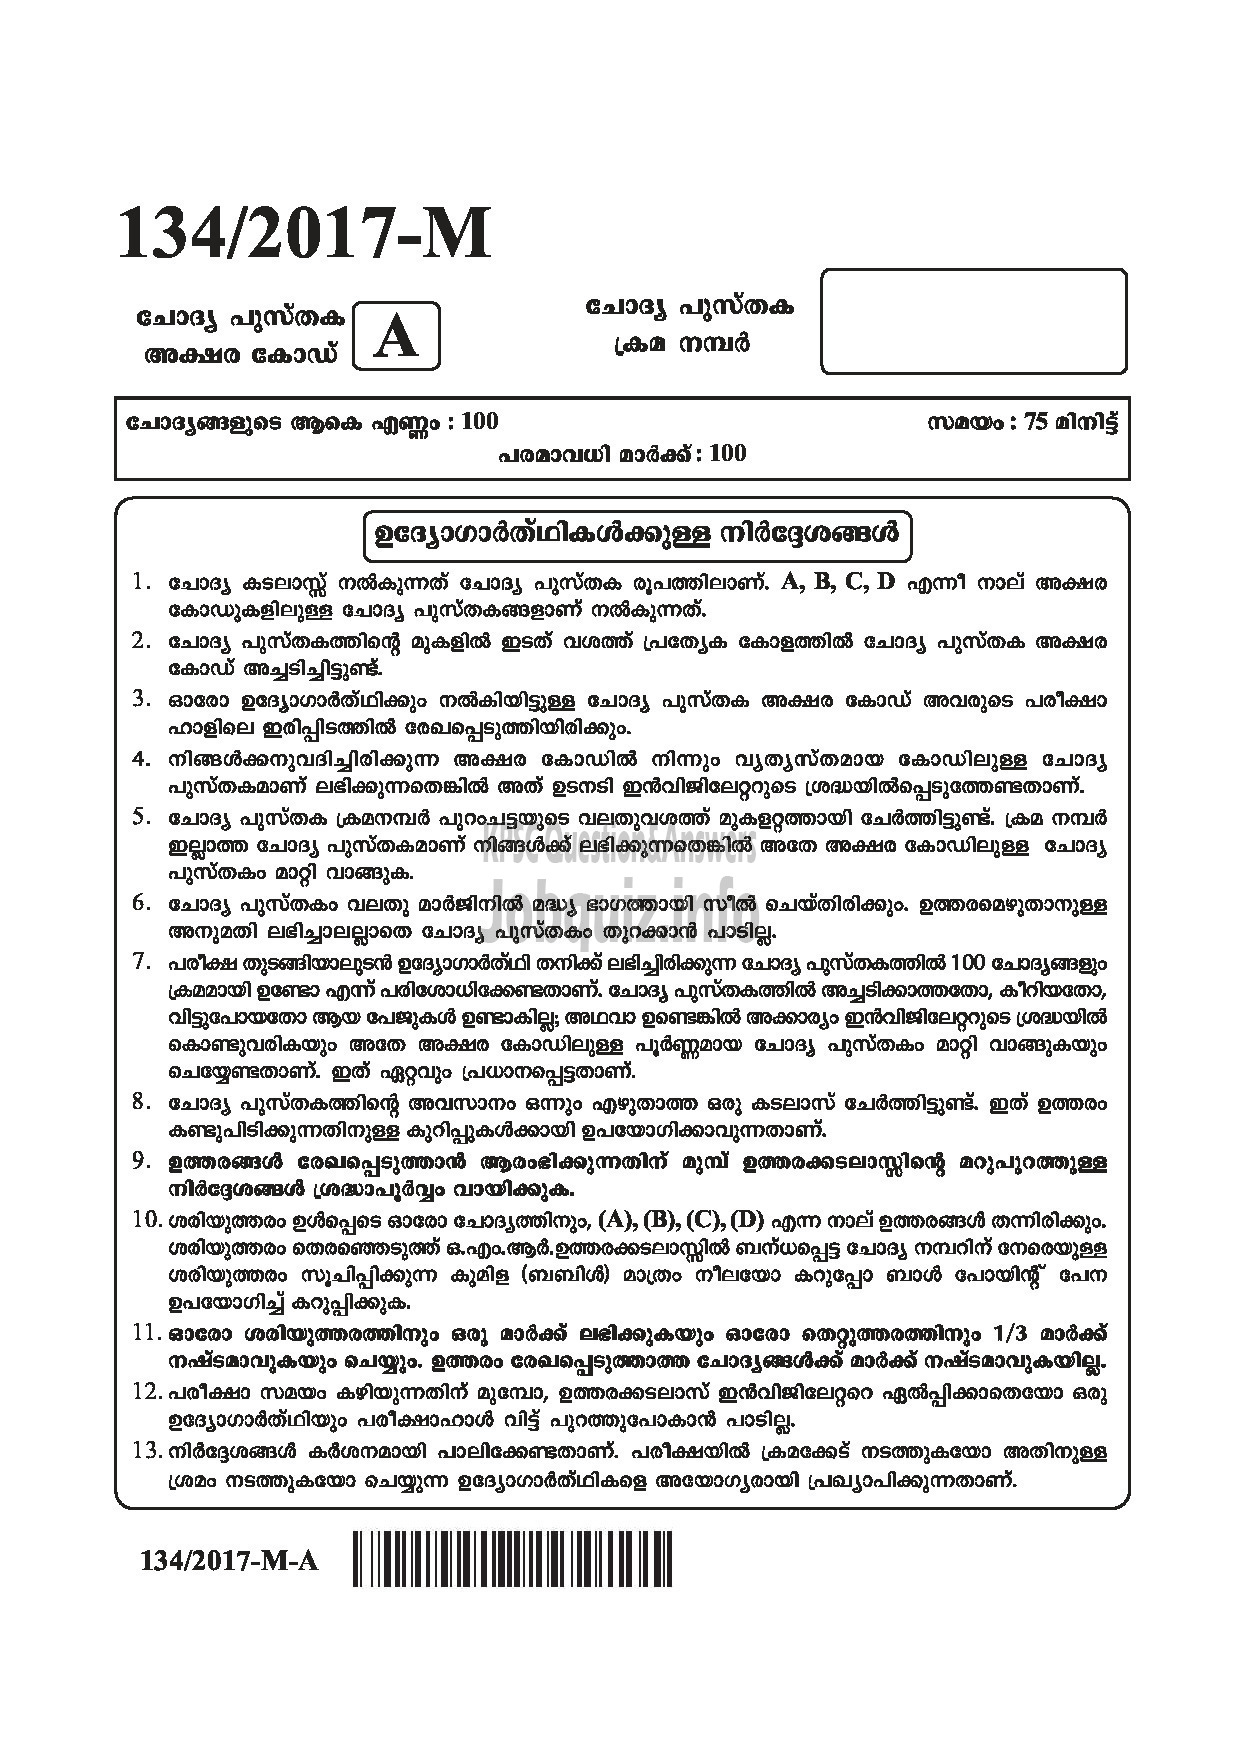 Kerala PSC Question Paper - VILLAGE FIELD ASSISTANT REVENUE THIRUVANANTHAPURAM PATHANAMTHITTA IDUKKI PALAKKAD KOZHIKODE MALAYALAM-1